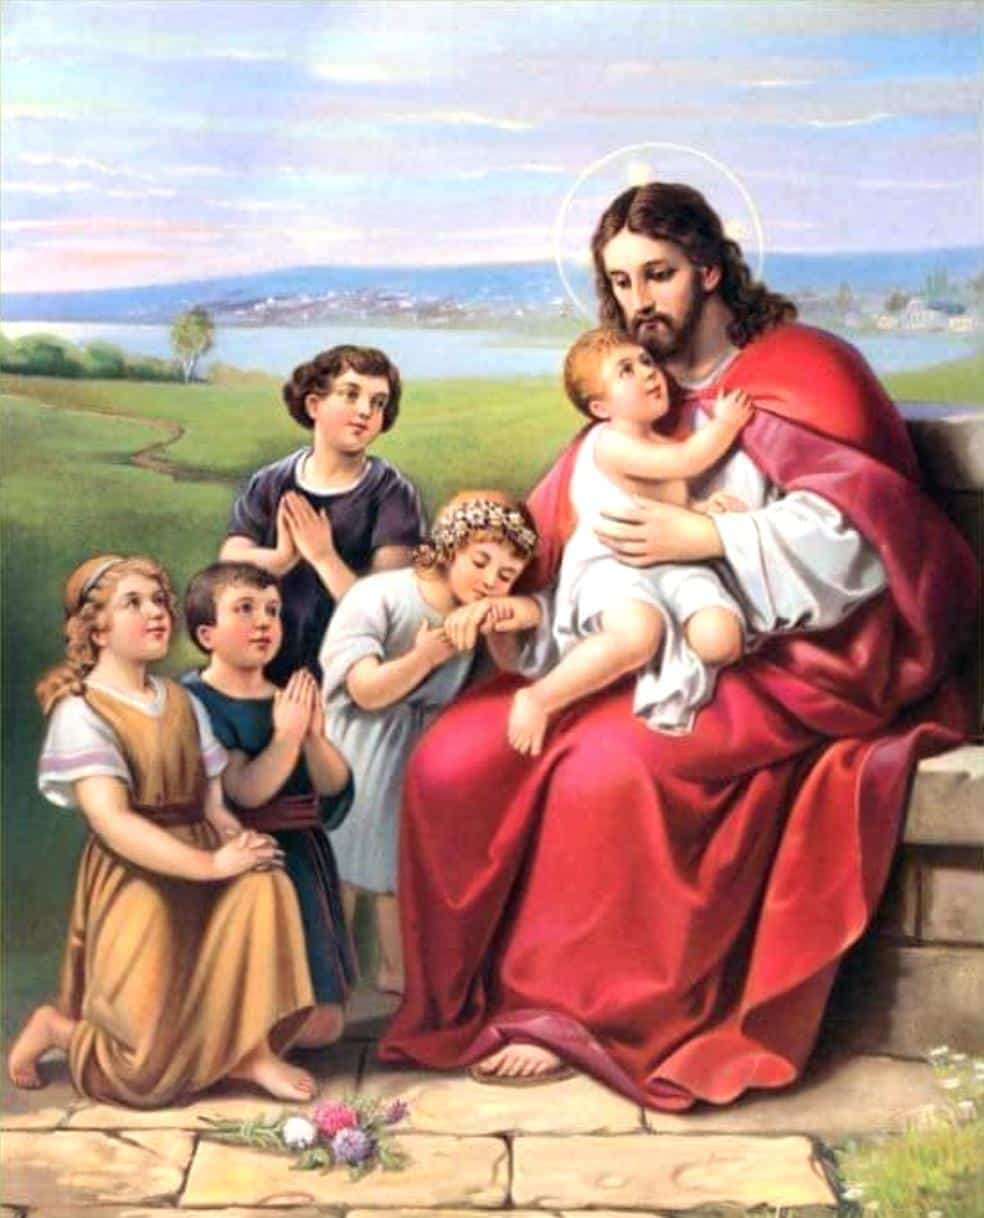 Ảnh trẻ em và chúa Giêsu đẹp